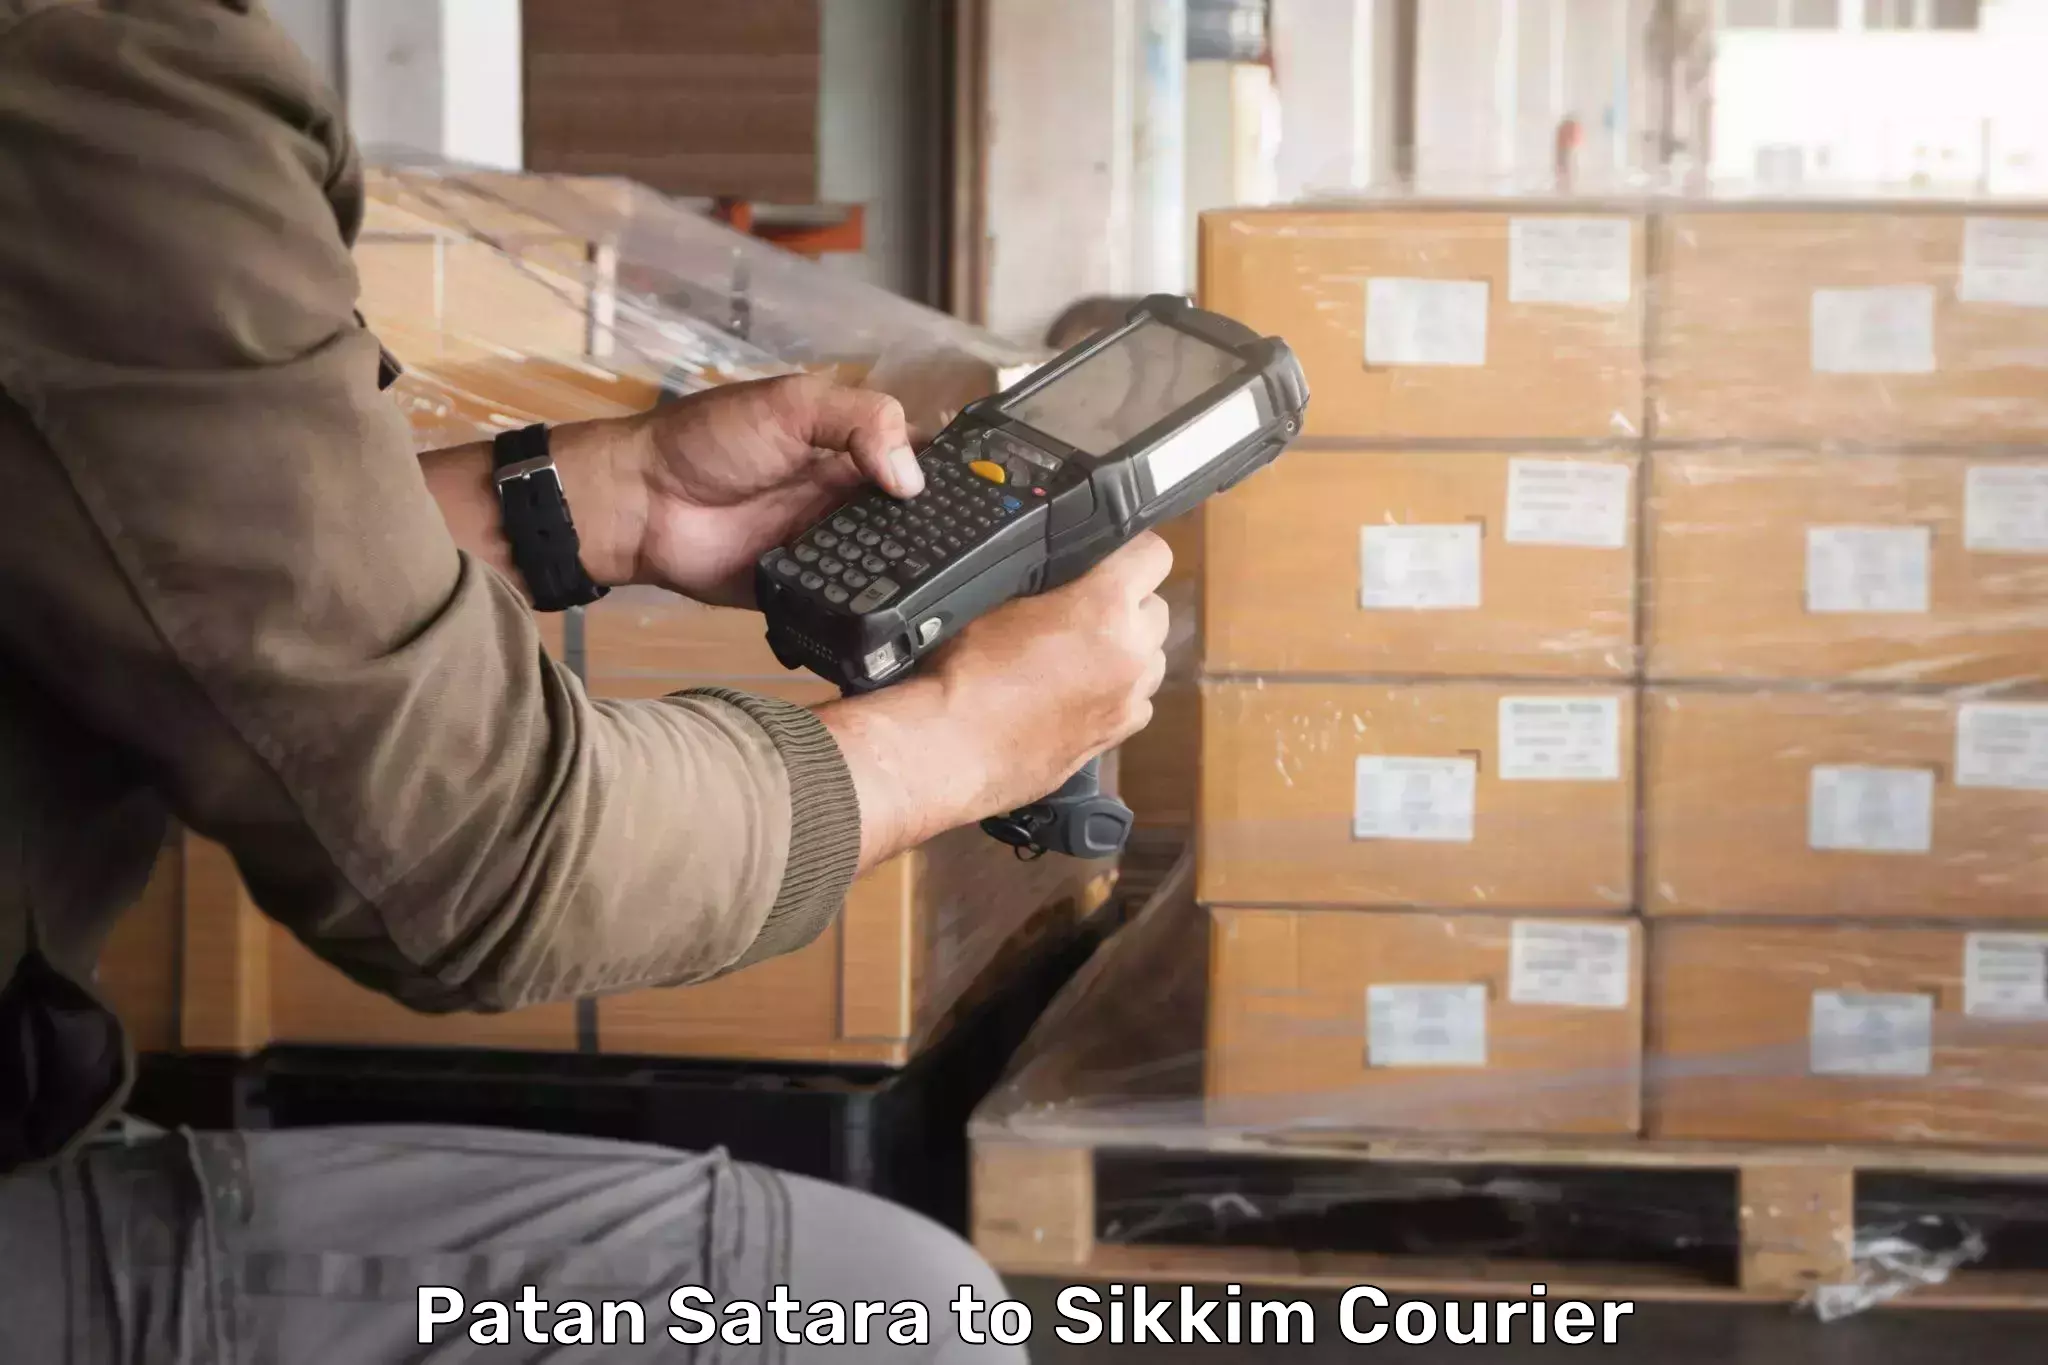 Next-day freight services Patan Satara to Pelling